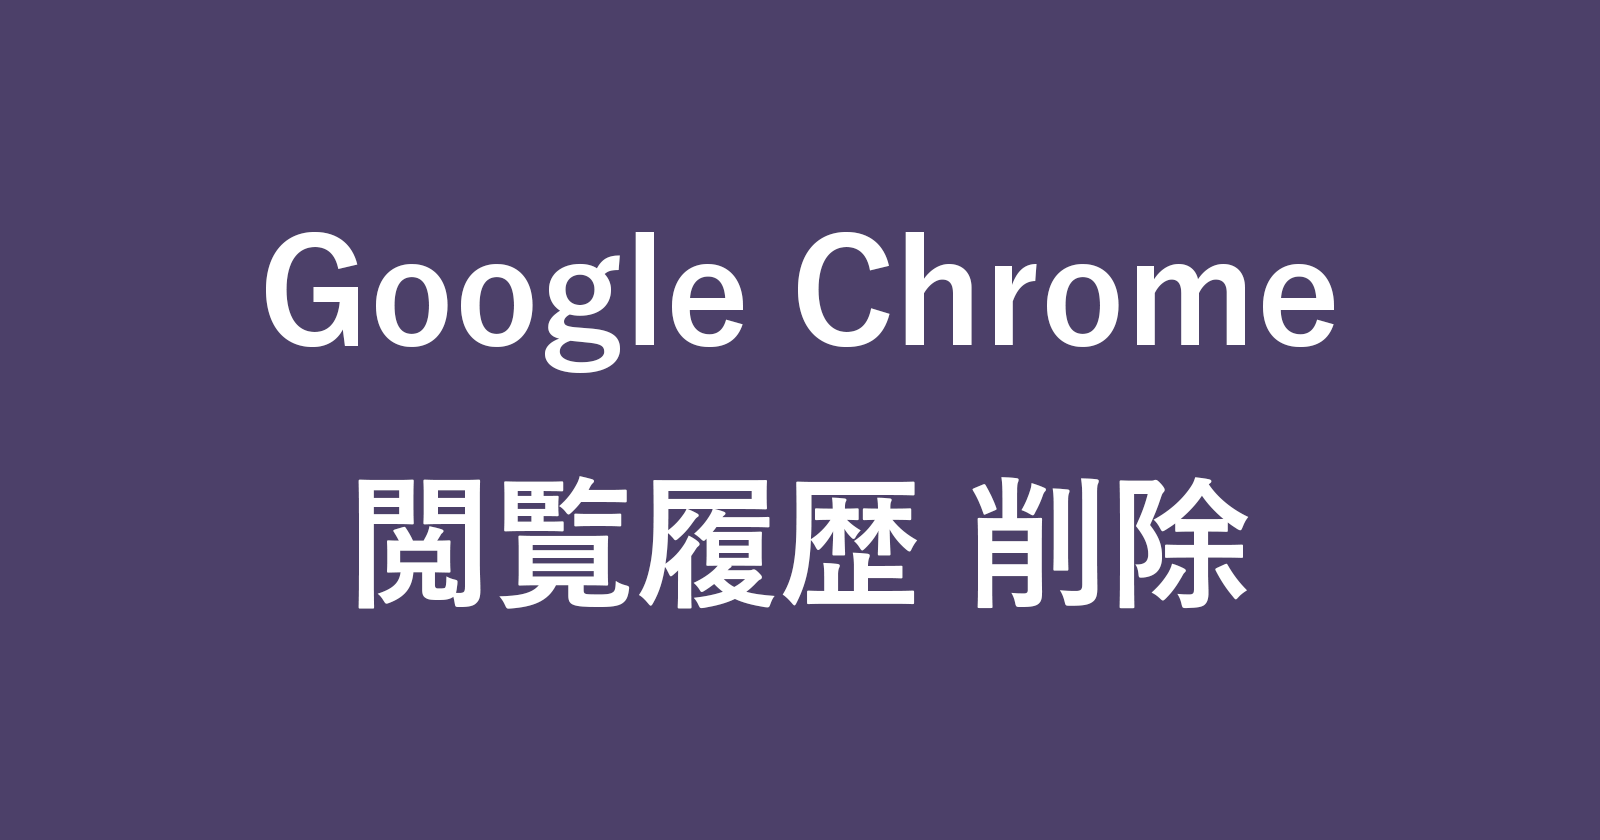 google chrome delete history